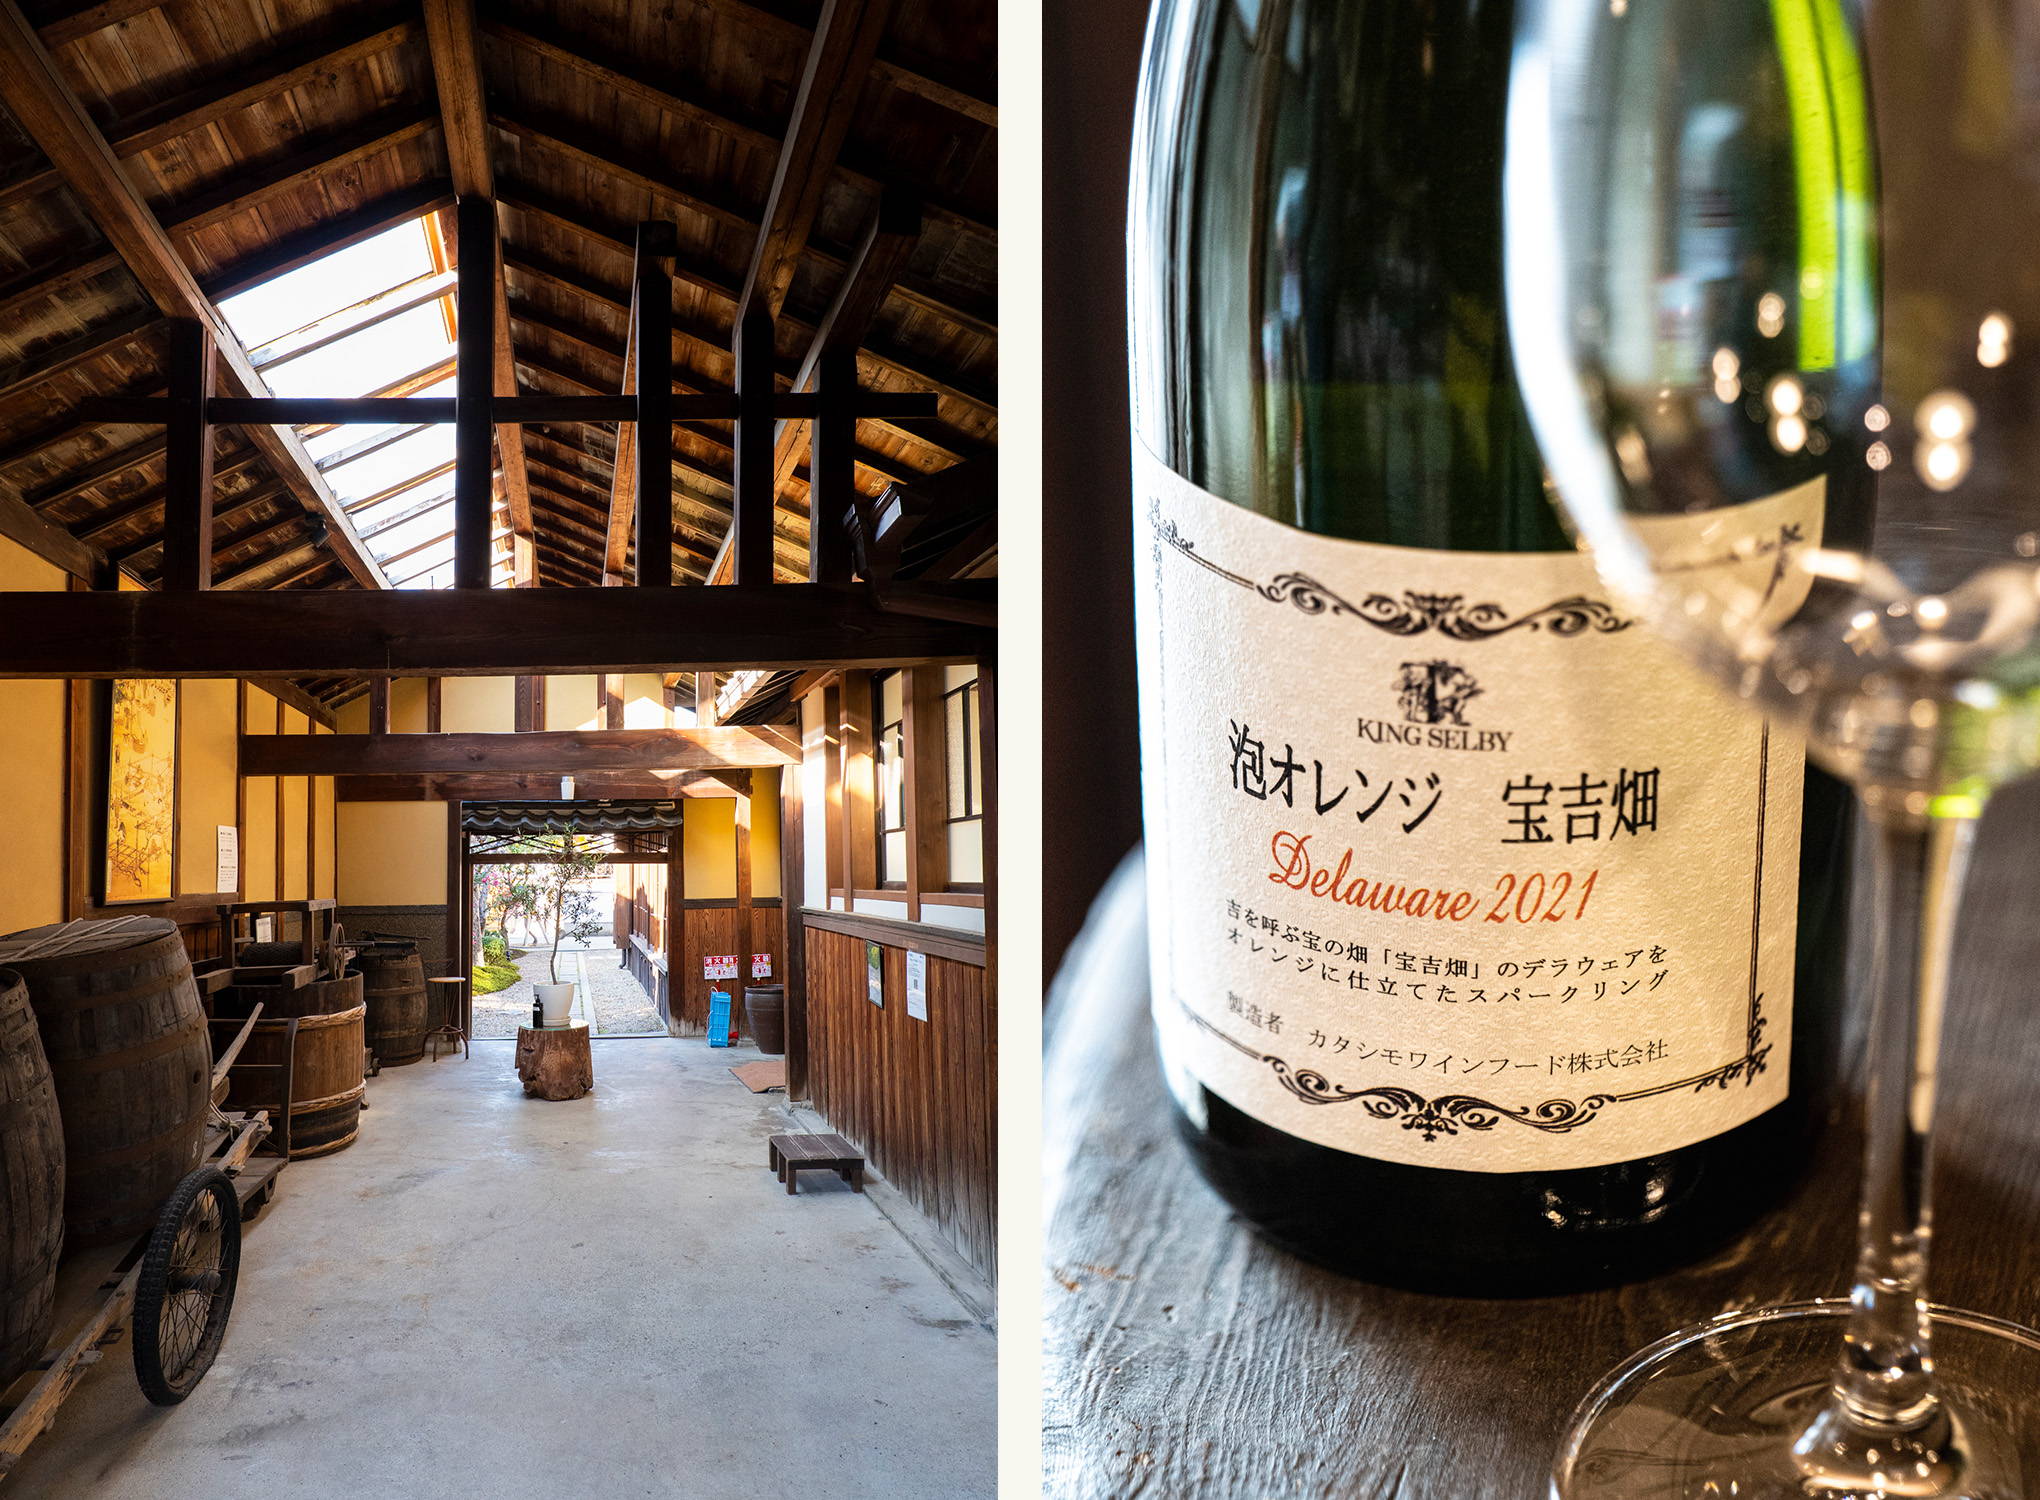 歴史ある銘醸地、大阪で一番の老舗。新しいチャレンジでも常に話題の『カタシモワイナリー』から到着、wa-syuでしか手に入らない限定醸造『泡オレンジ 宝吉畑 デラウェア 2021』！